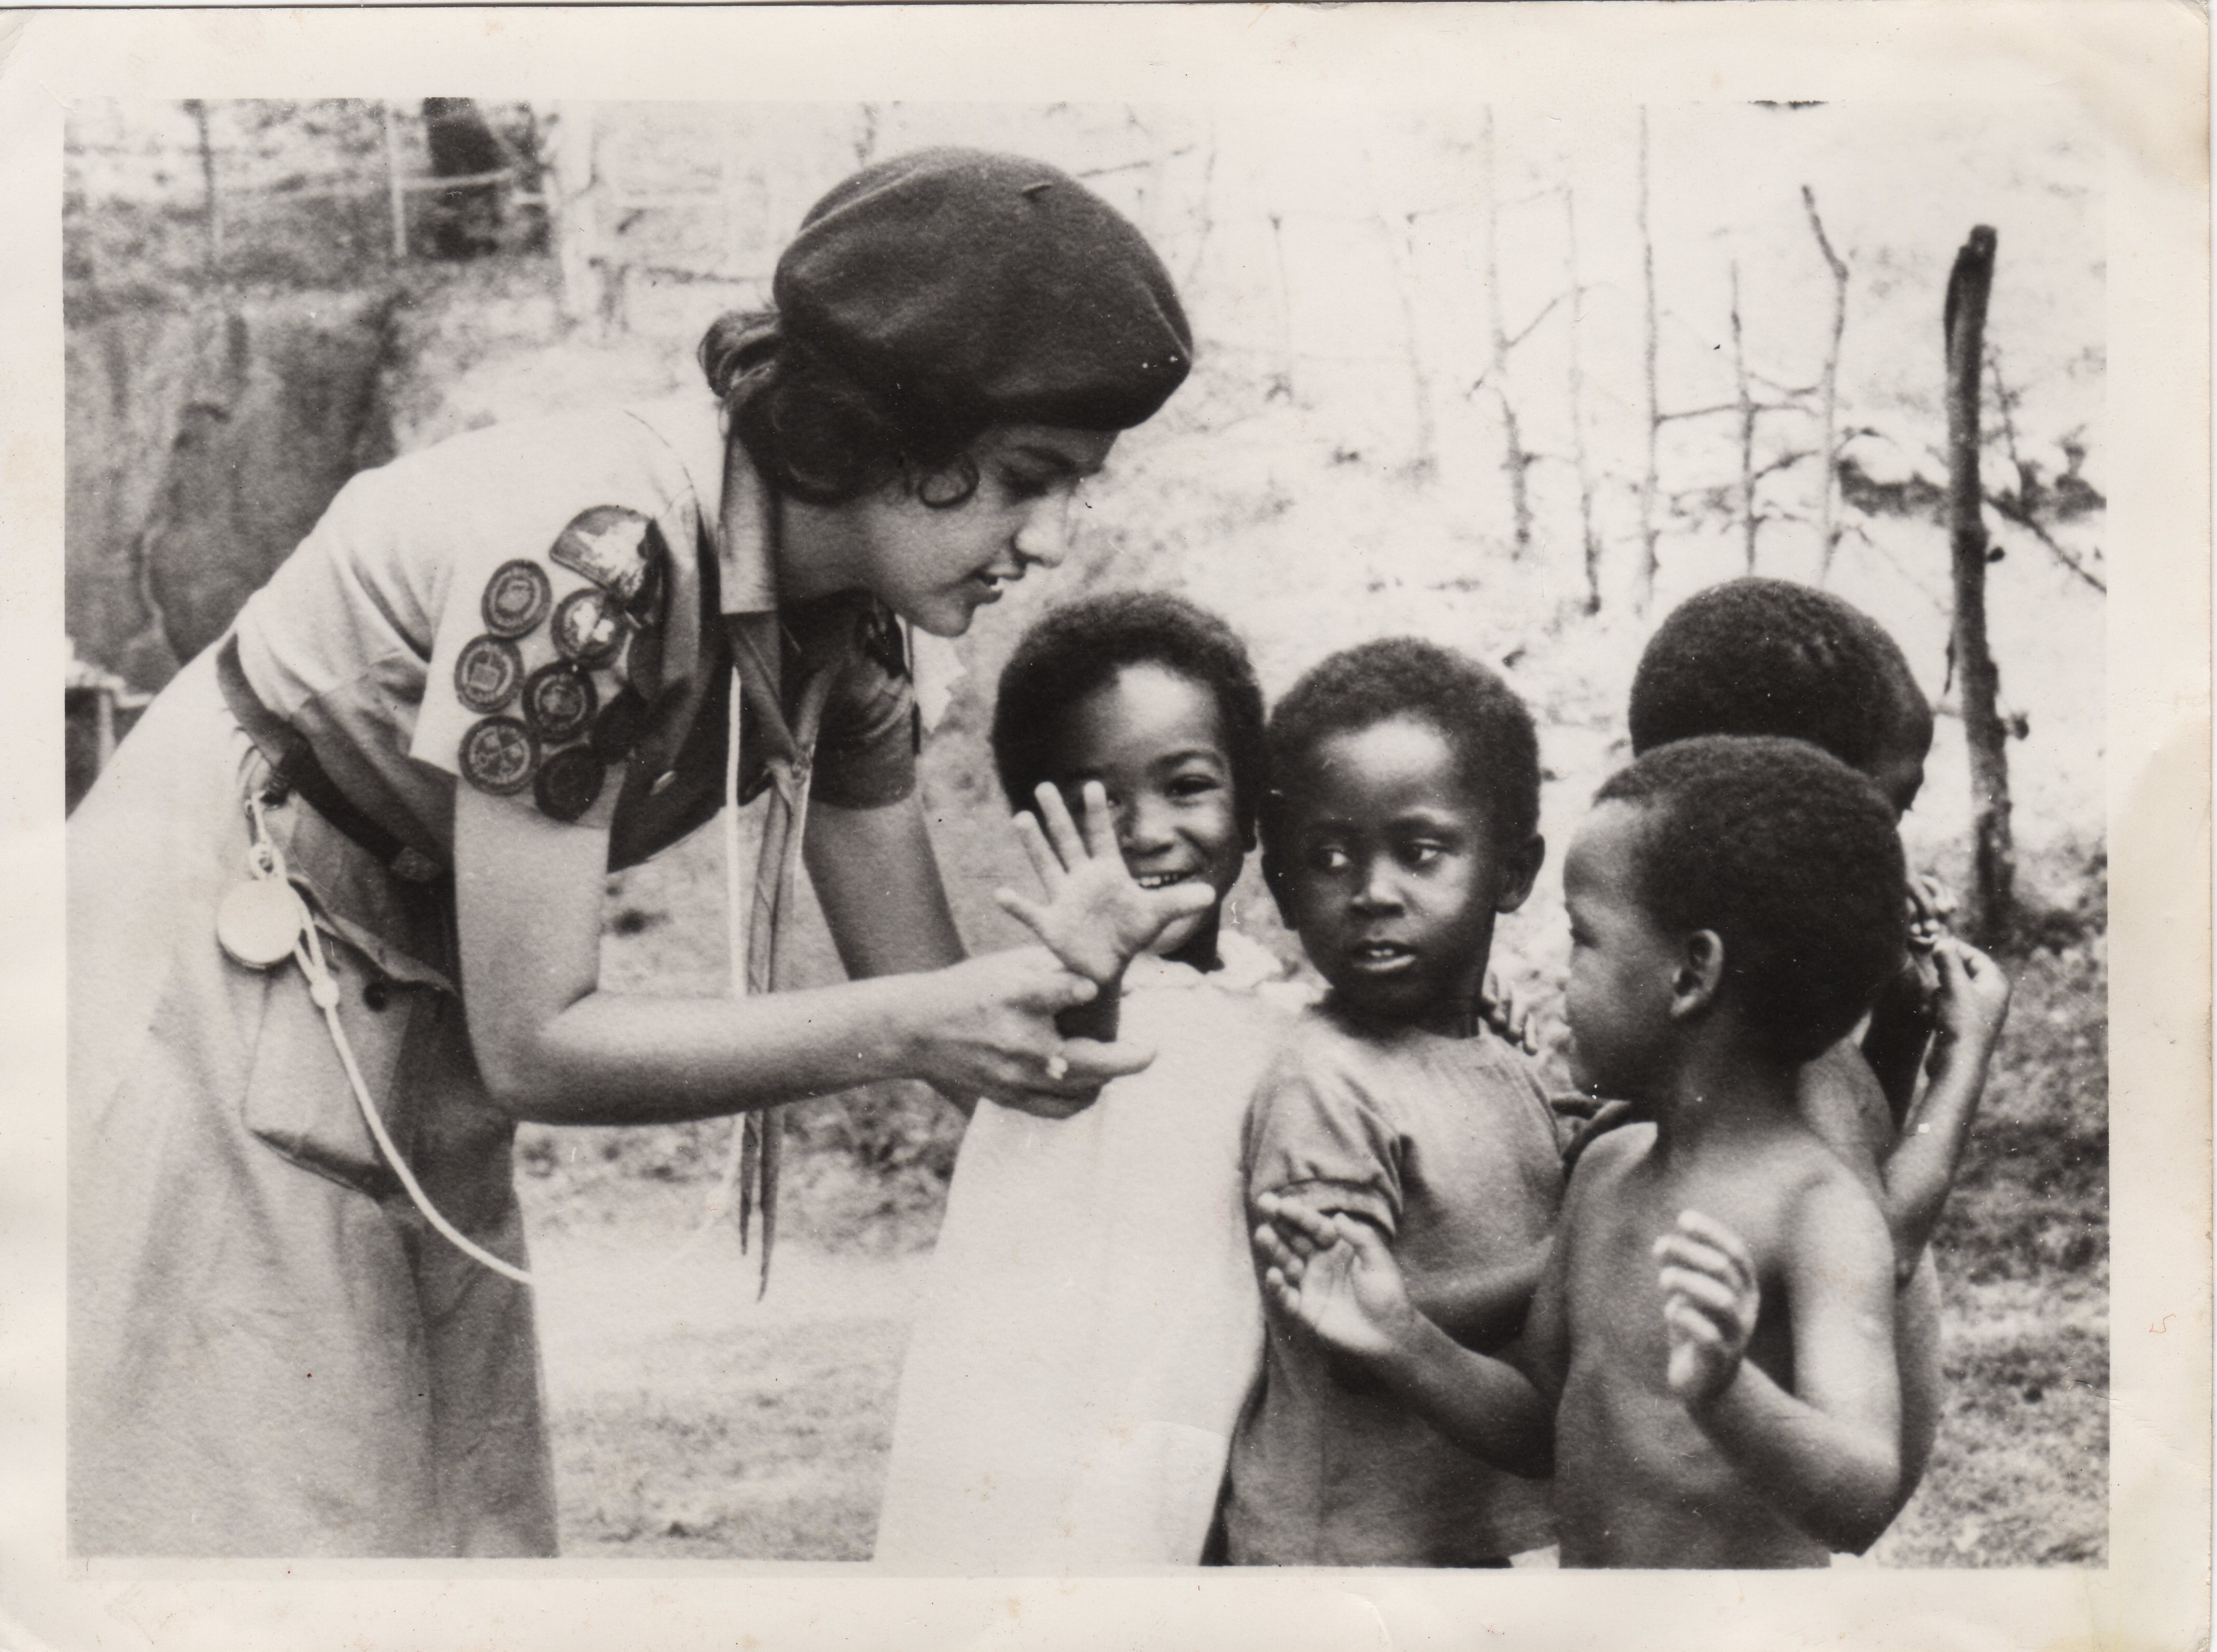 La sénatrice Mobina Jaffer en tant que guide de la Reine en Ouganda dans les années 1960. (Crédit photo : Bureau de la sénatrice Jaffer)